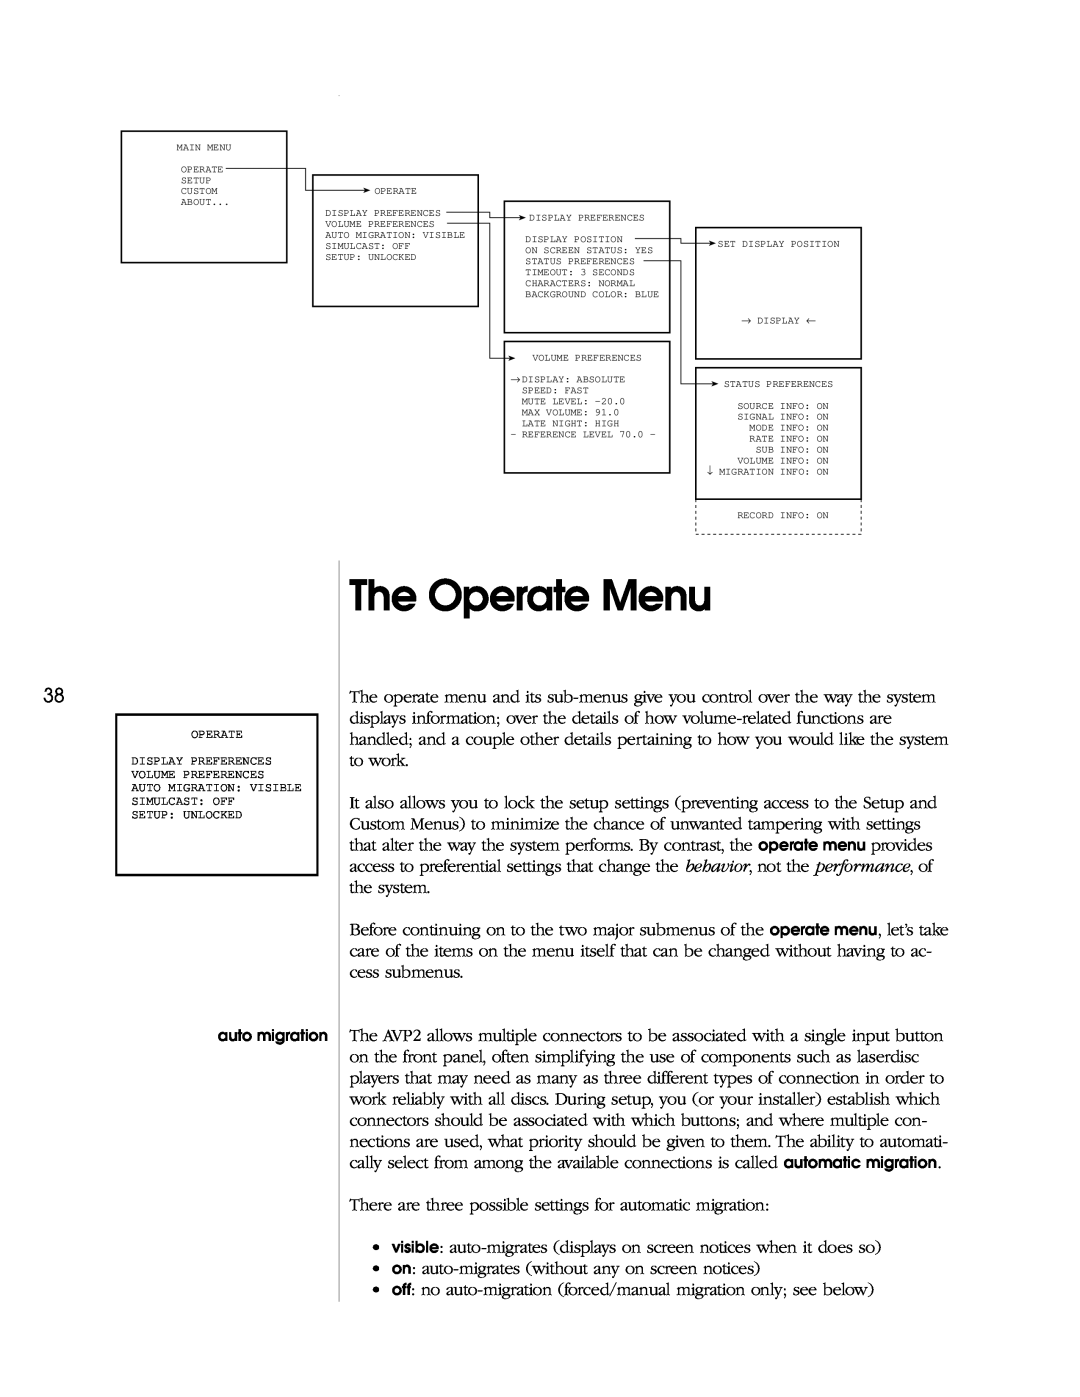 Madrigal Imaging AVP2 owner manual The Operate Menu 